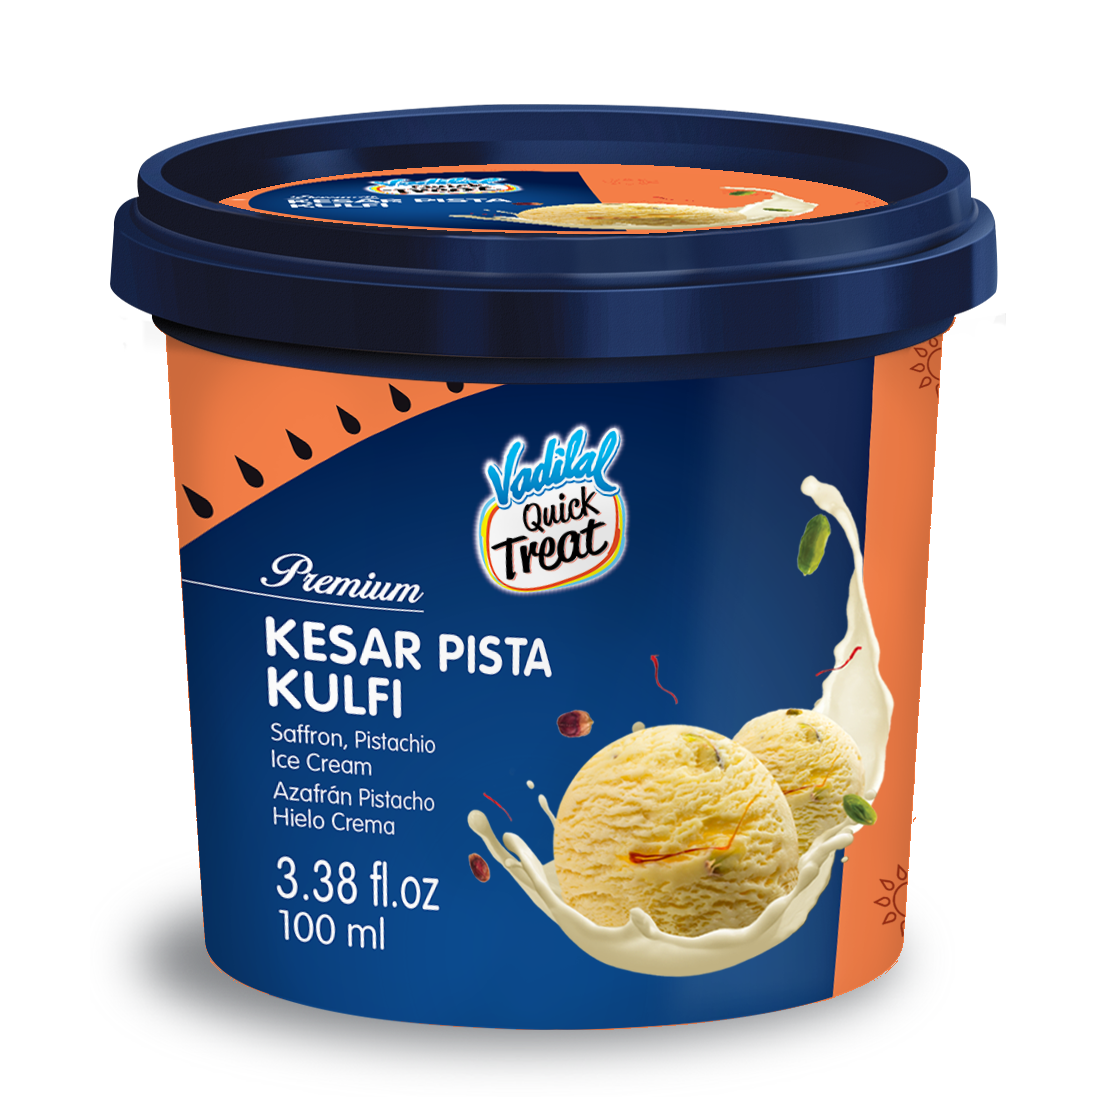 Vadilal Kesar Pista Kulfi Ice Cream - 100 Ml (3.38 Fl Oz)